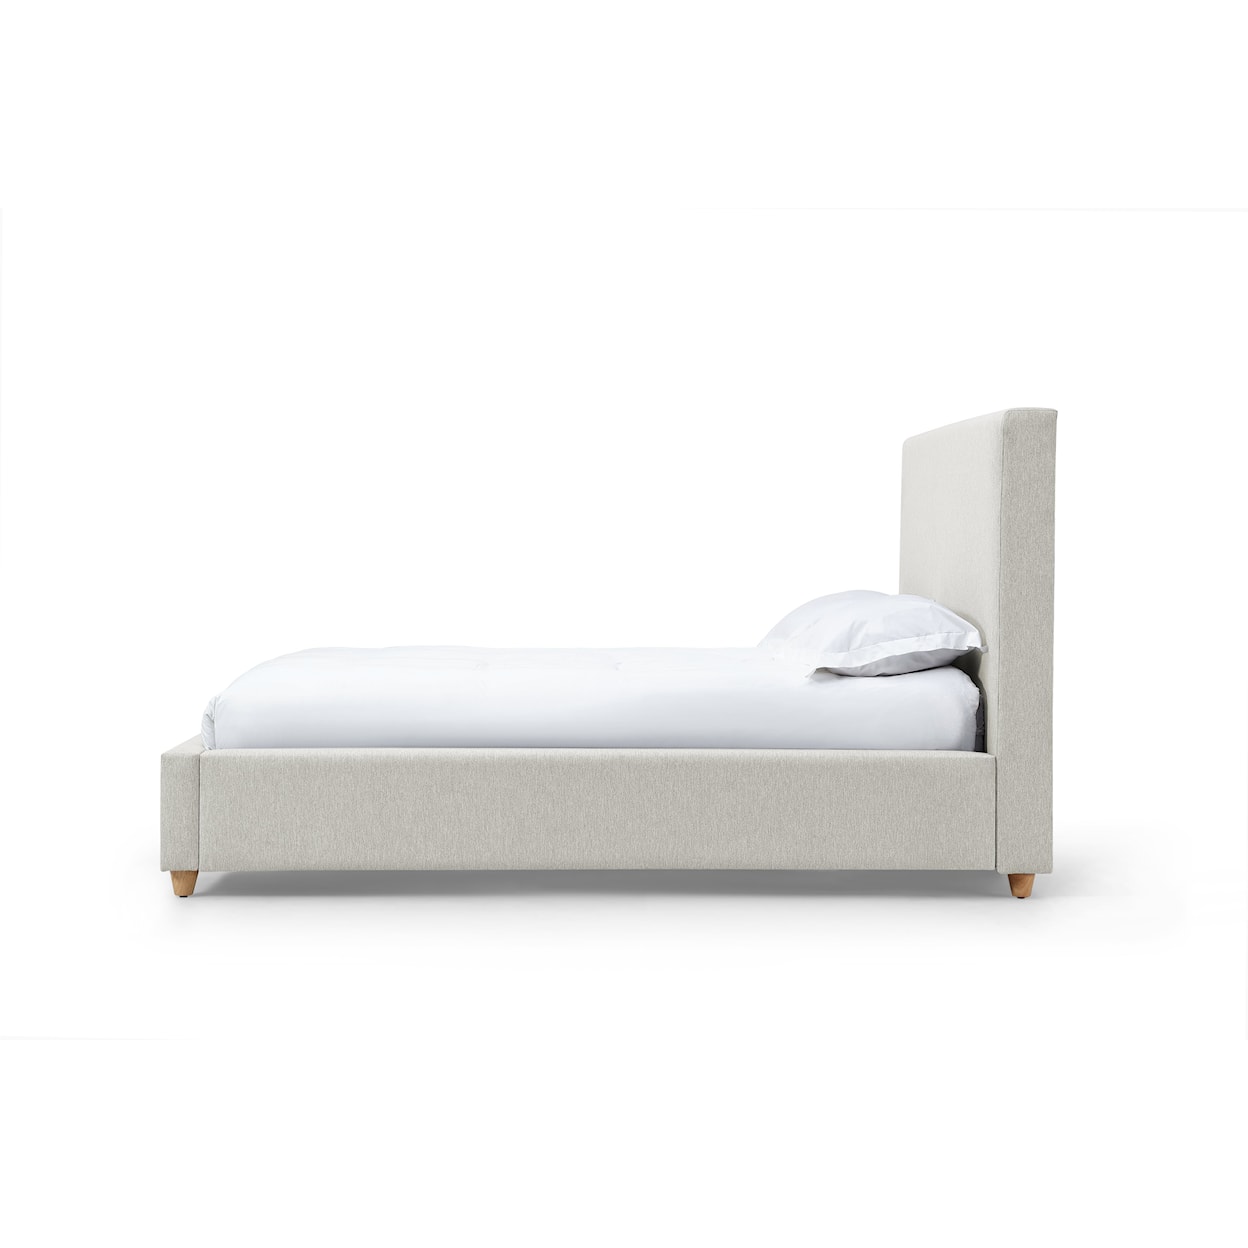 Modus International Olivia King Upholstered Platform Bed